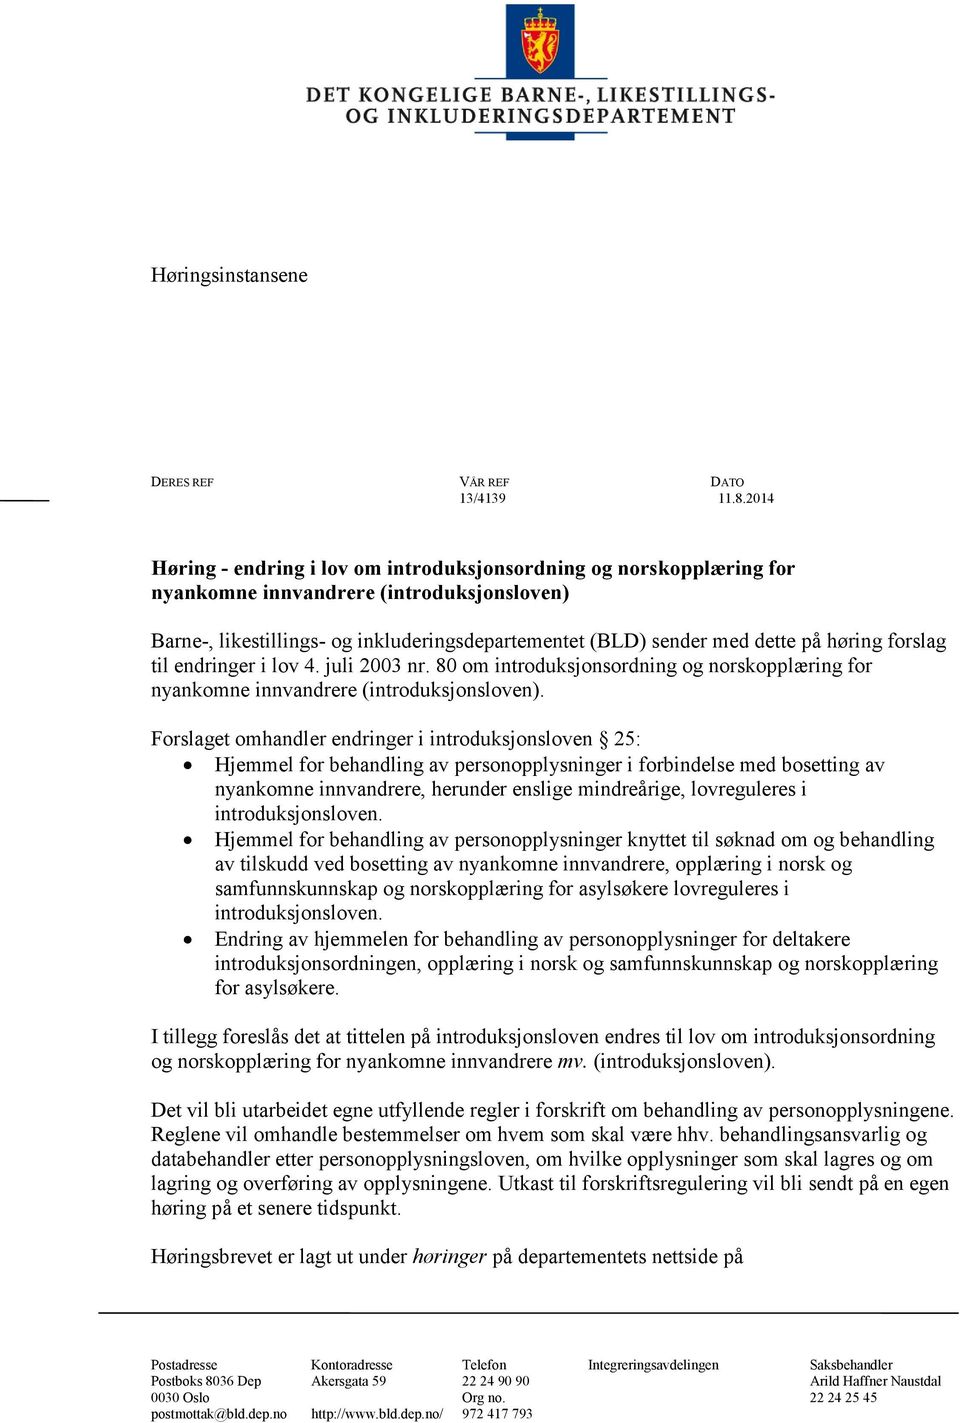 høring forslag til endringer i lov 4. juli 2003 nr. 80 om introduksjonsordning og norskopplæring for nyankomne innvandrere (introduksjonsloven).